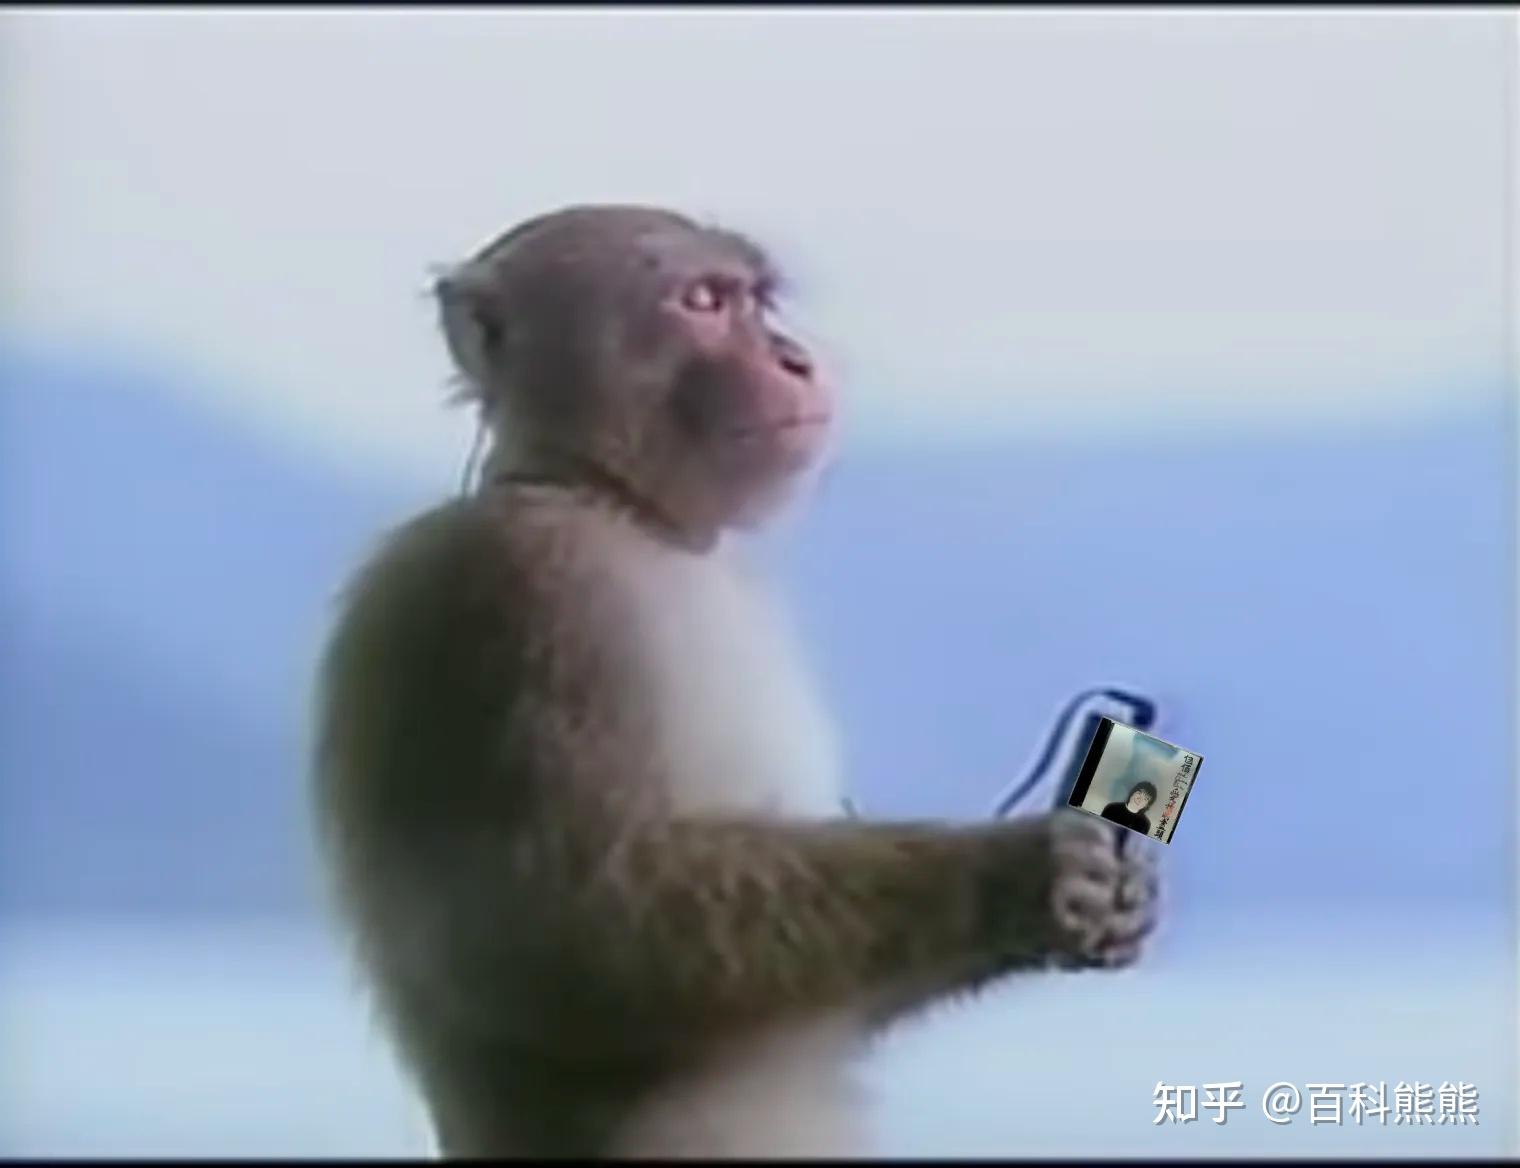 可爱猴子4k图片_4K动物图片高清壁纸_墨鱼部落格